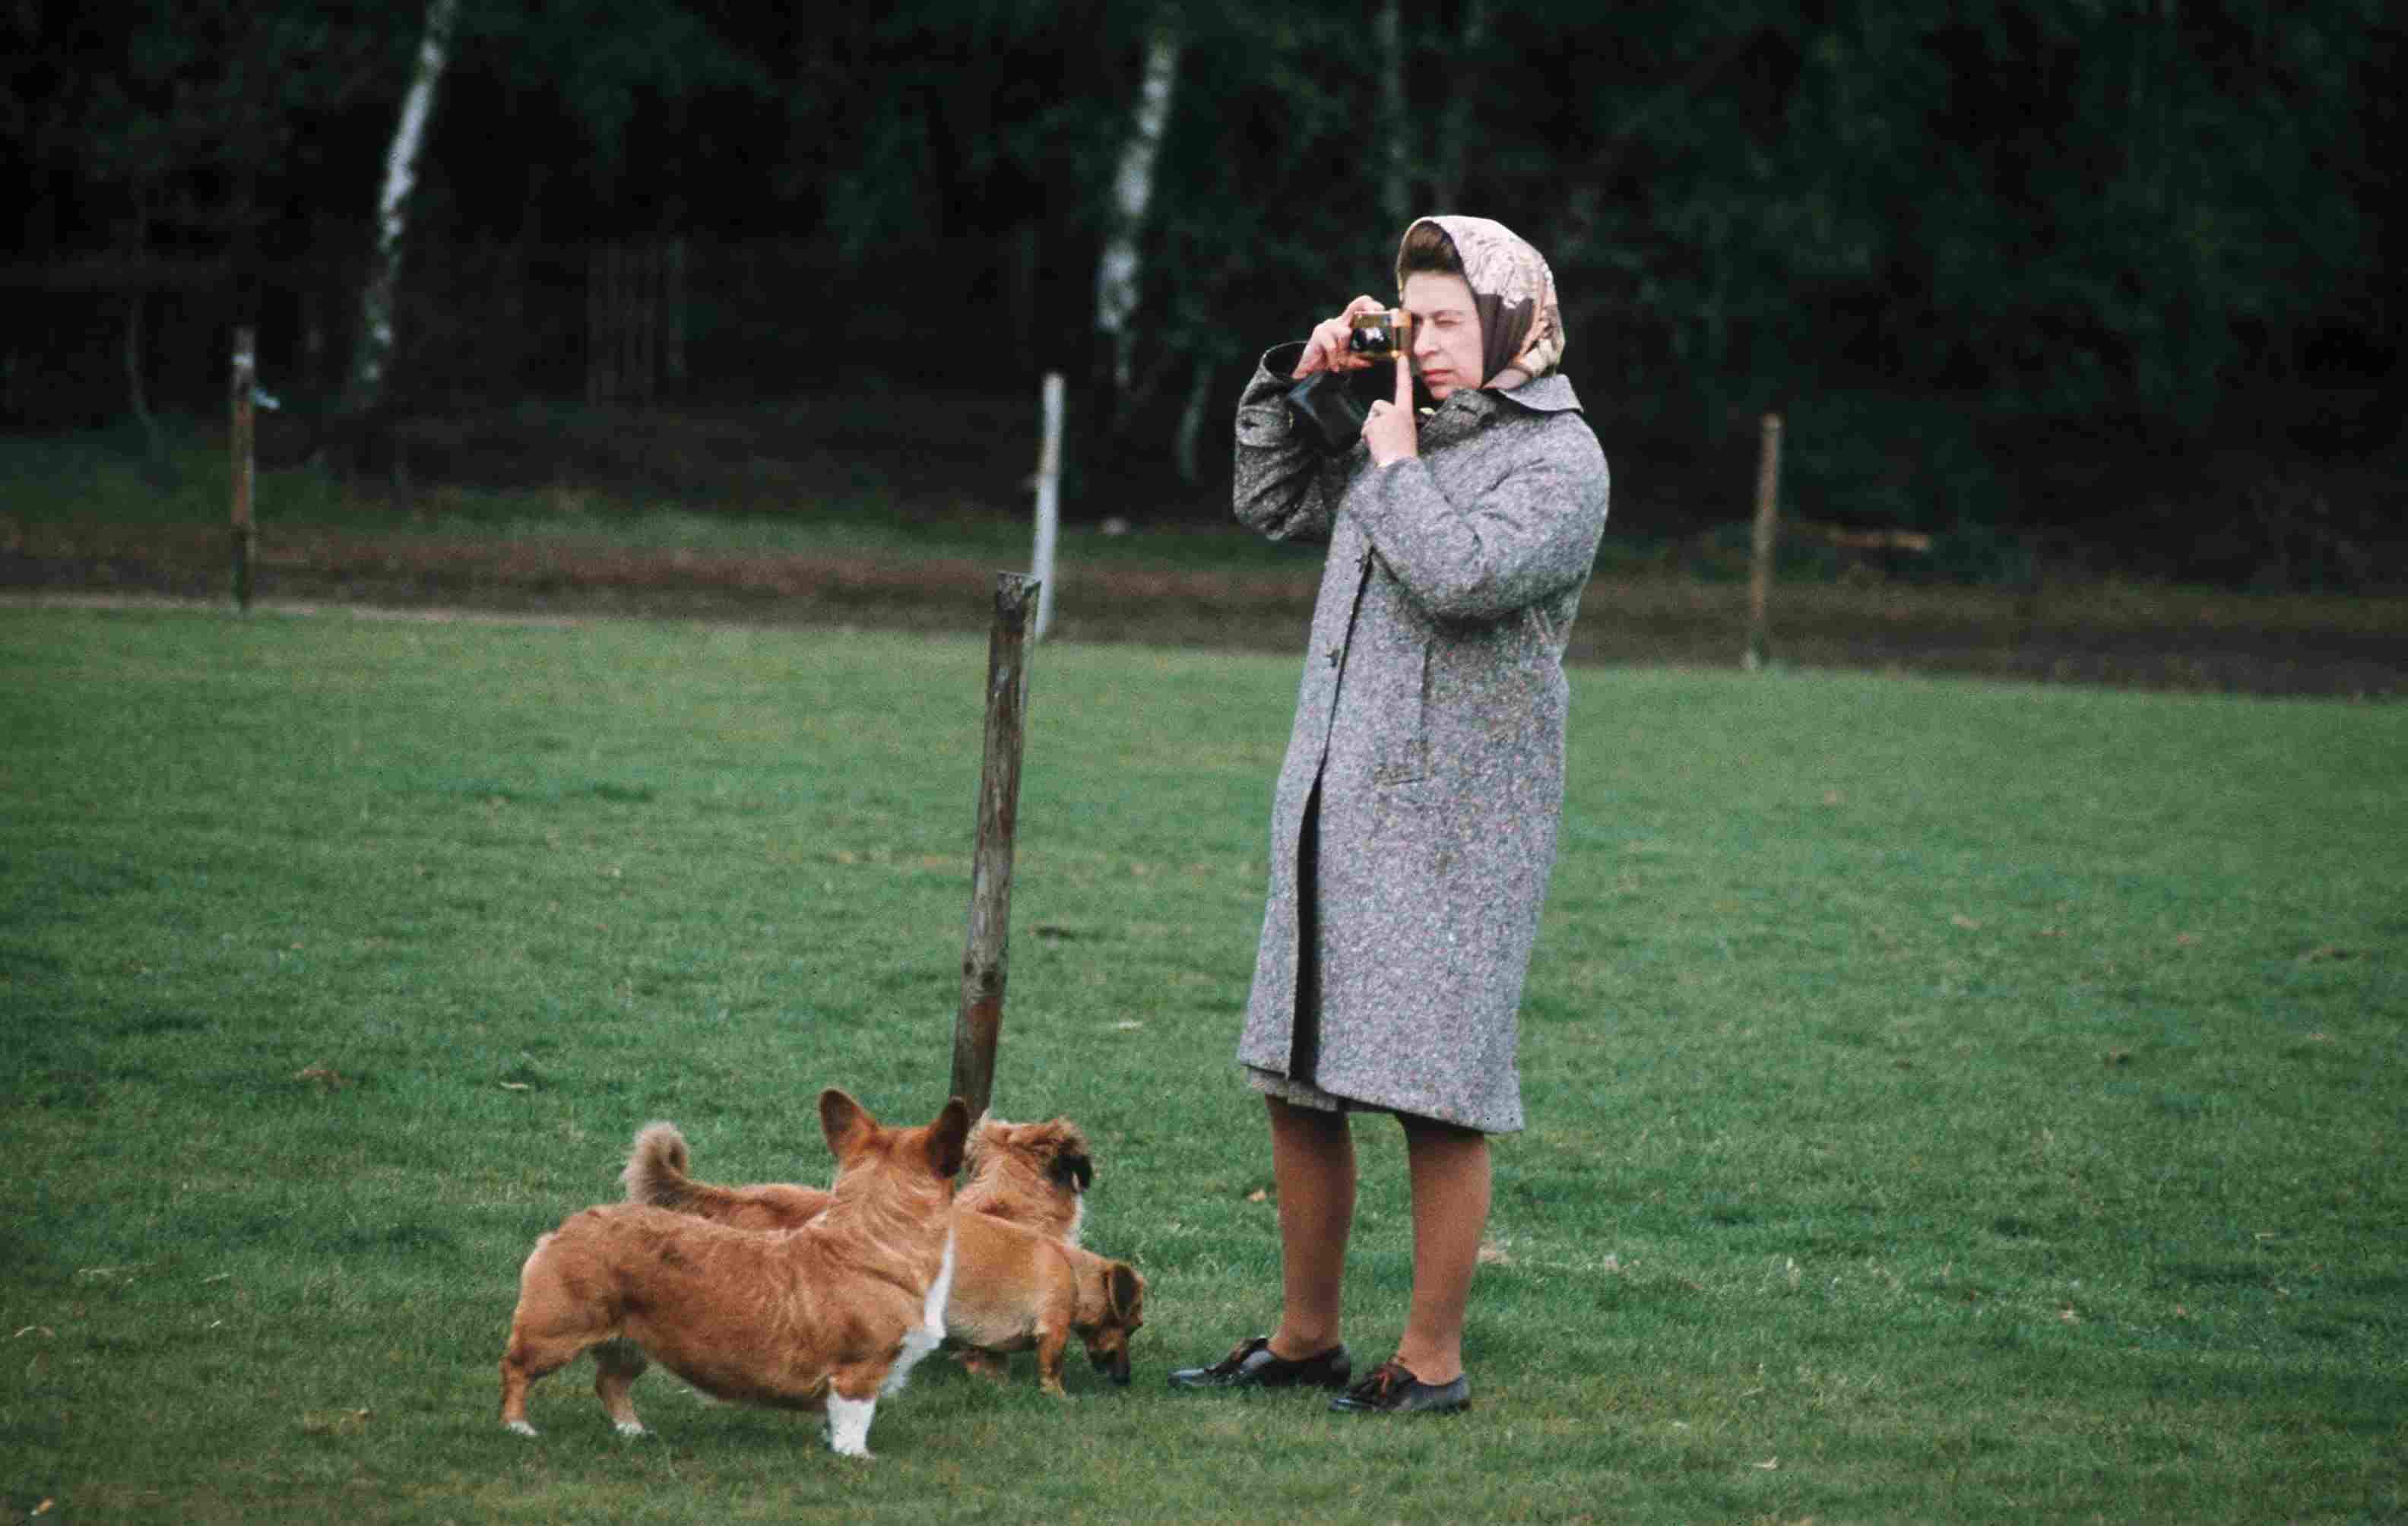 Queen Elizabeth II in Windsor Park photographing her corgis in 1960, in England.